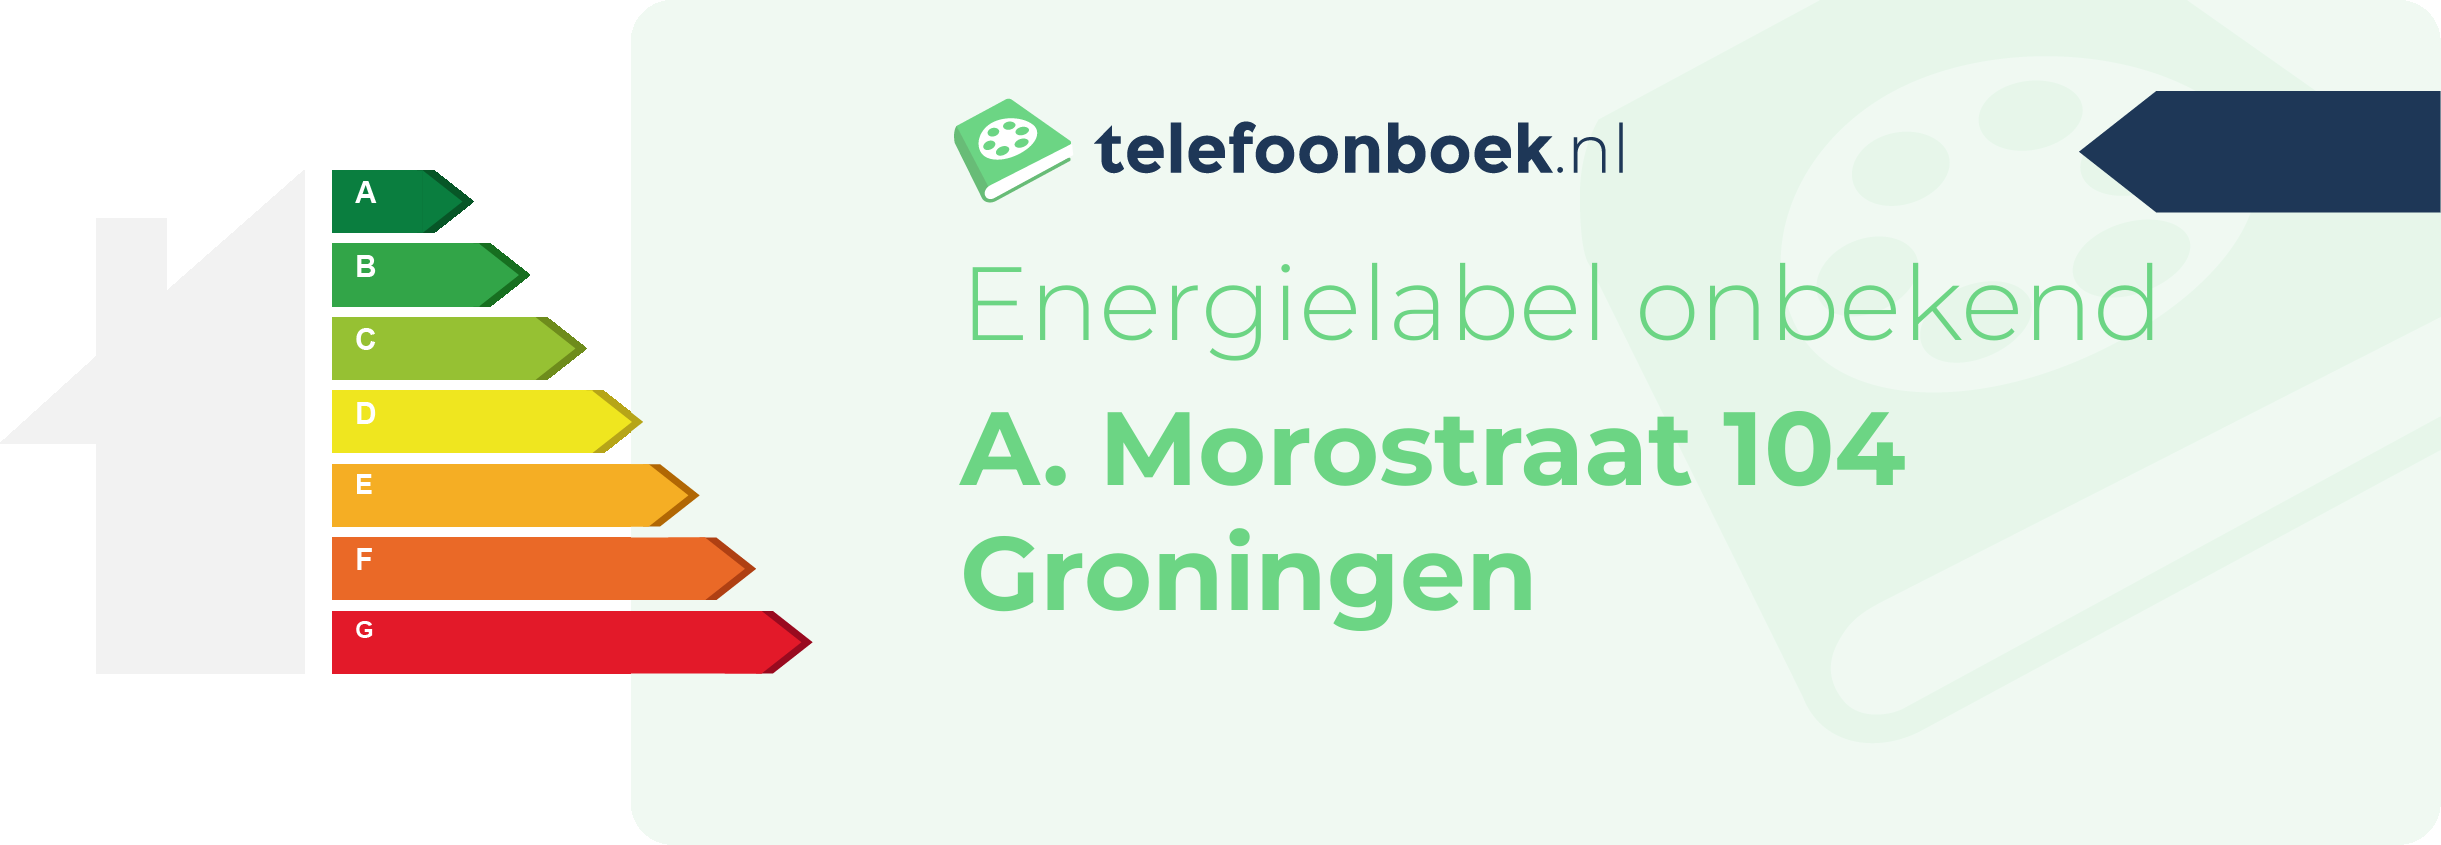 Energielabel A. Morostraat 104 Groningen